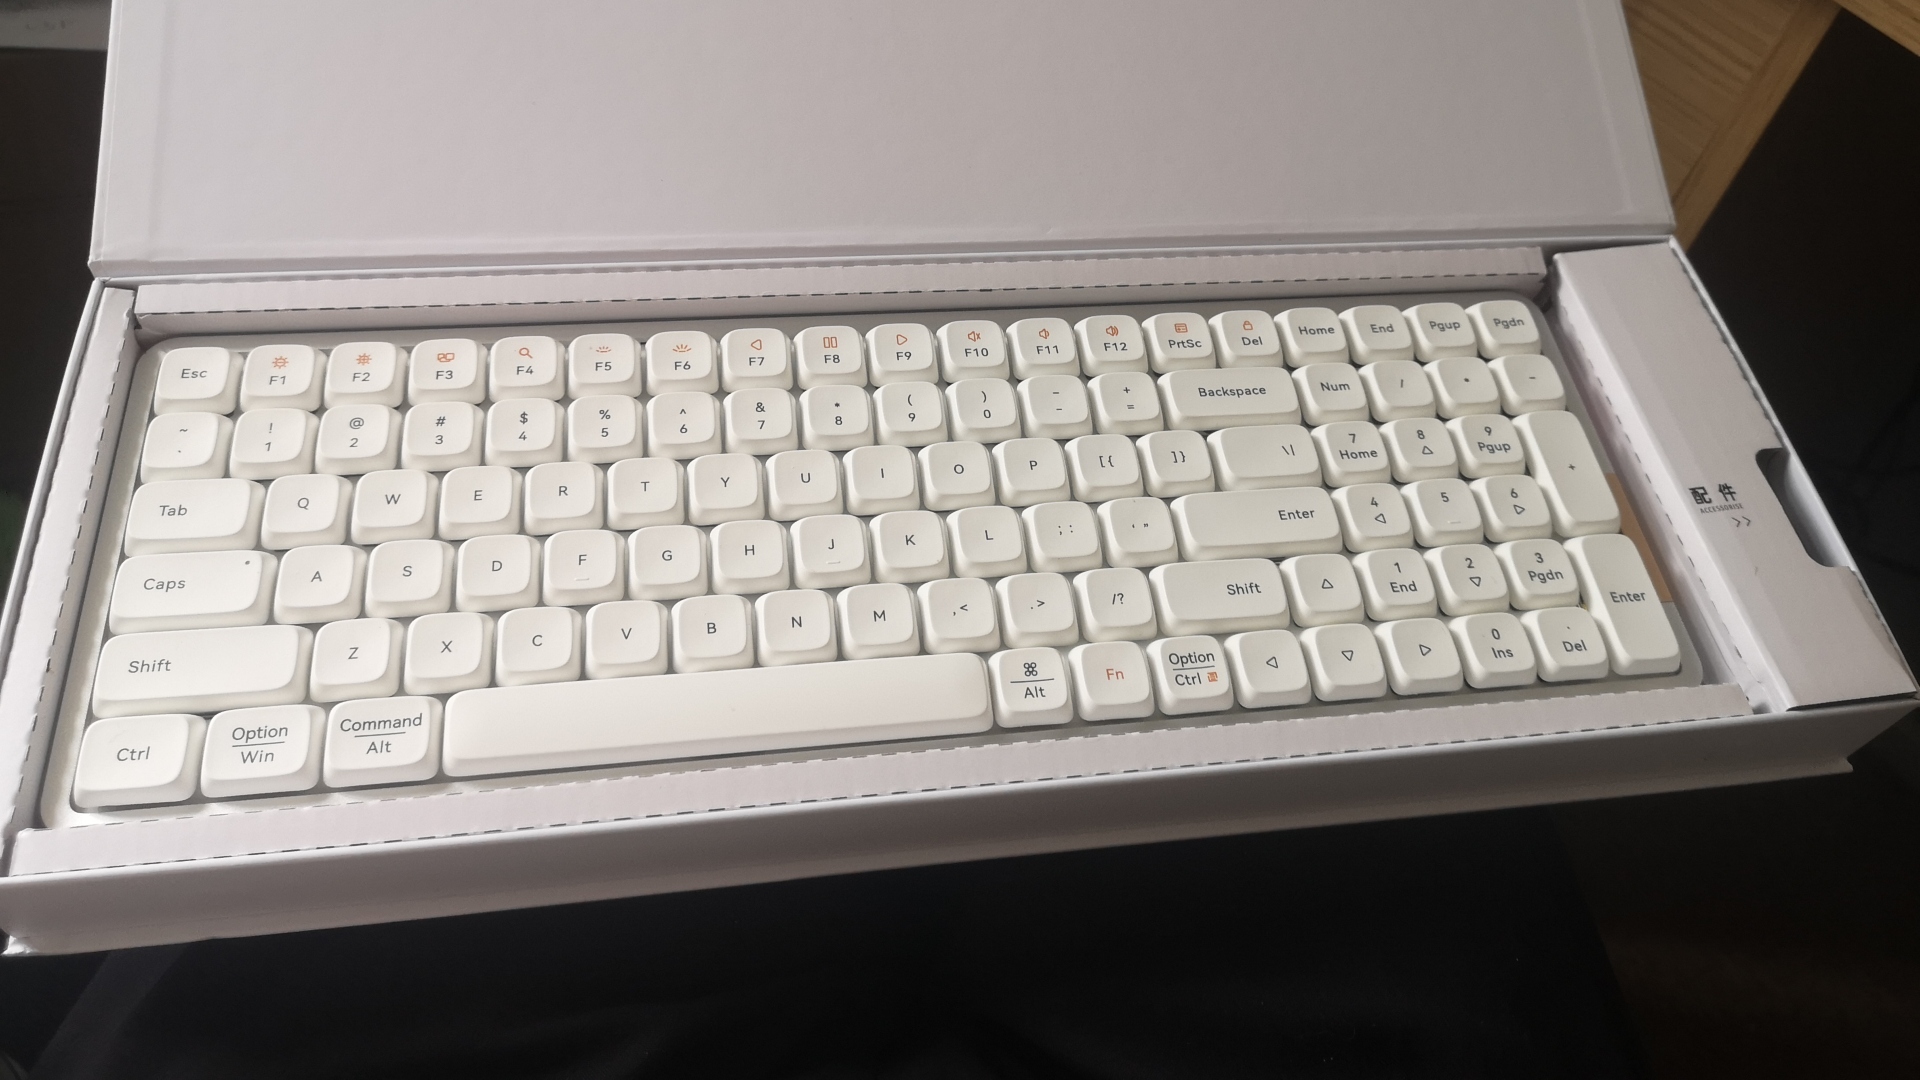 Lofree Flow Mekanik Klavye, klavyeyi kutusunda gösteren inceleme resmi.